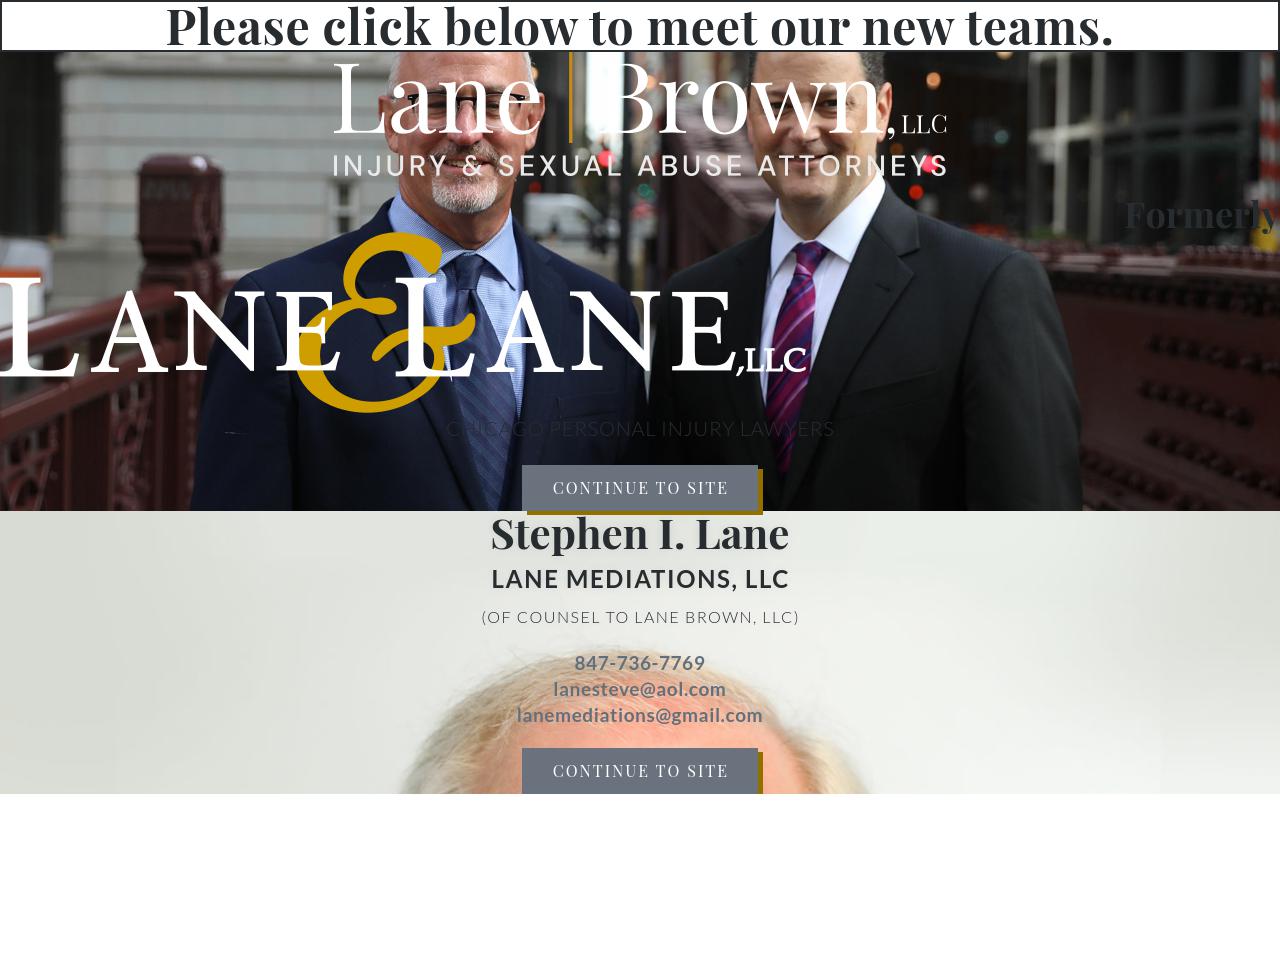 Lane & Lane, LLC - Chicago IL Lawyers